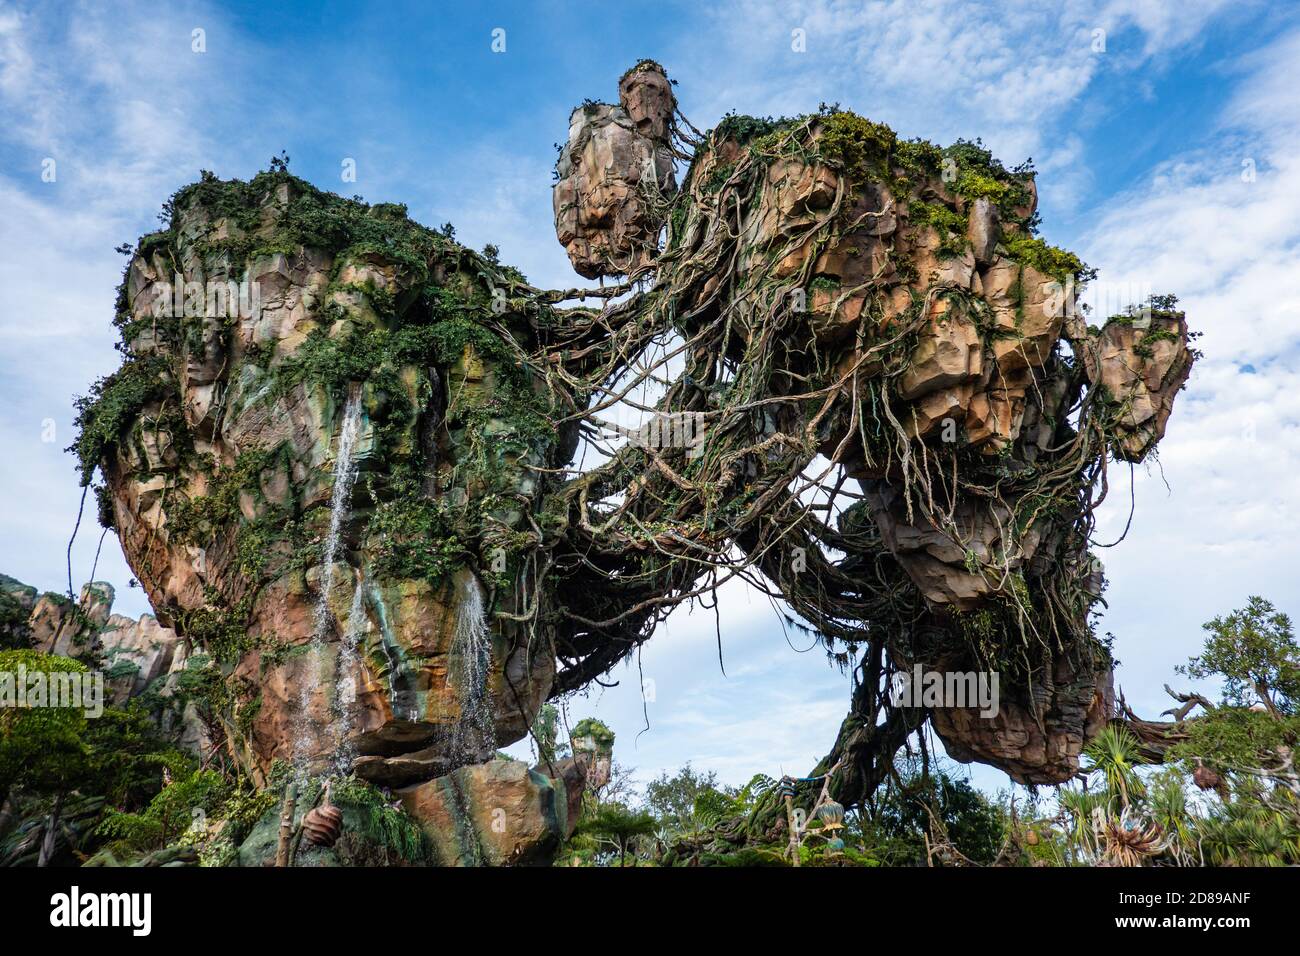 Le gigantesche isole rocciose sfidano la gravità a Pandora – il mondo dell'Avatar a Animal Kingdom, Disney World, Florida Foto Stock